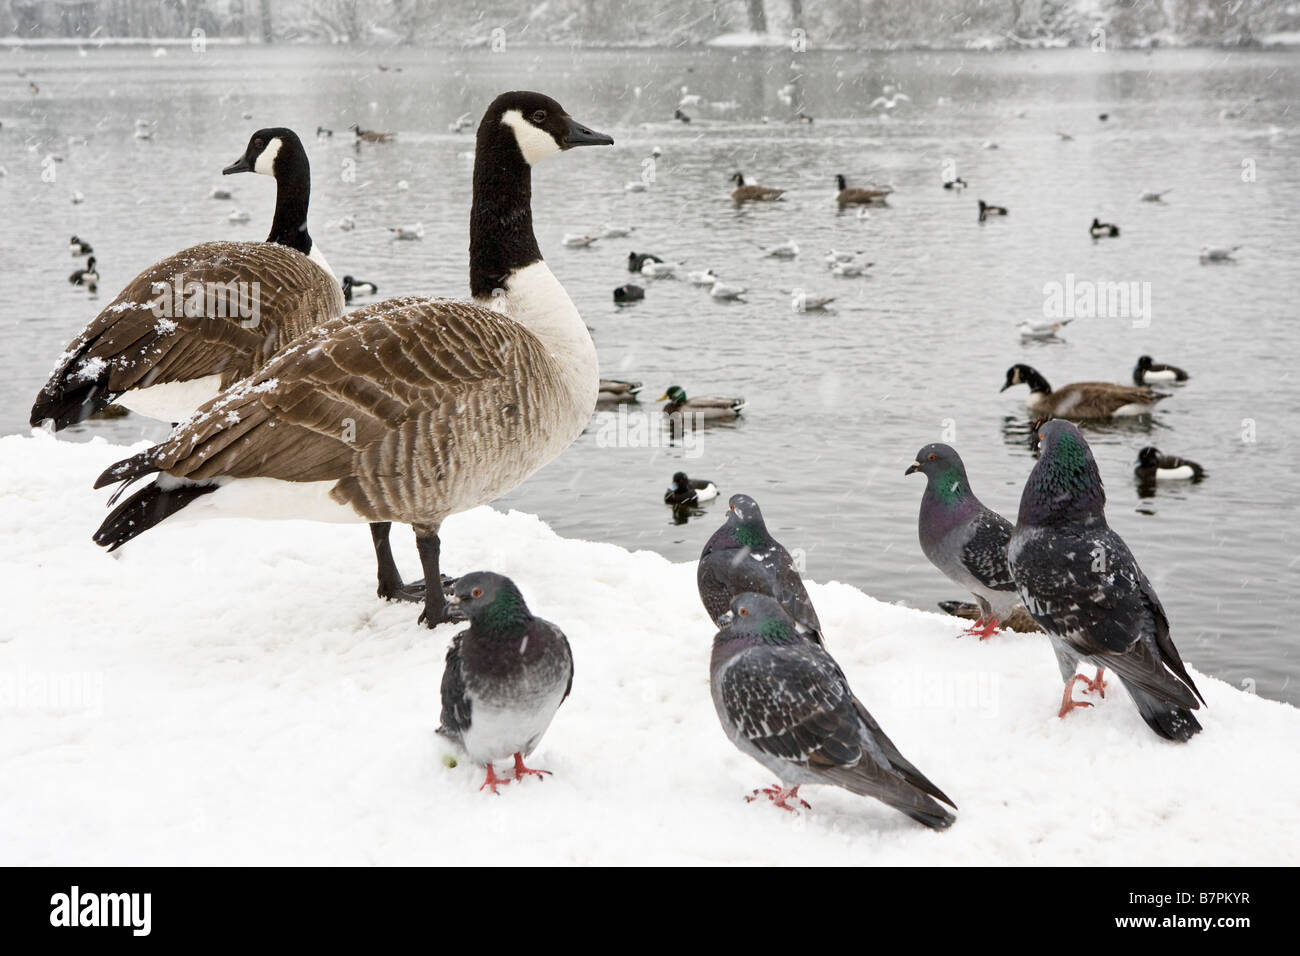 Tauben, Gänse und andere Vögel am Rande eines Teiches nach starkem Schneefall Stockfoto